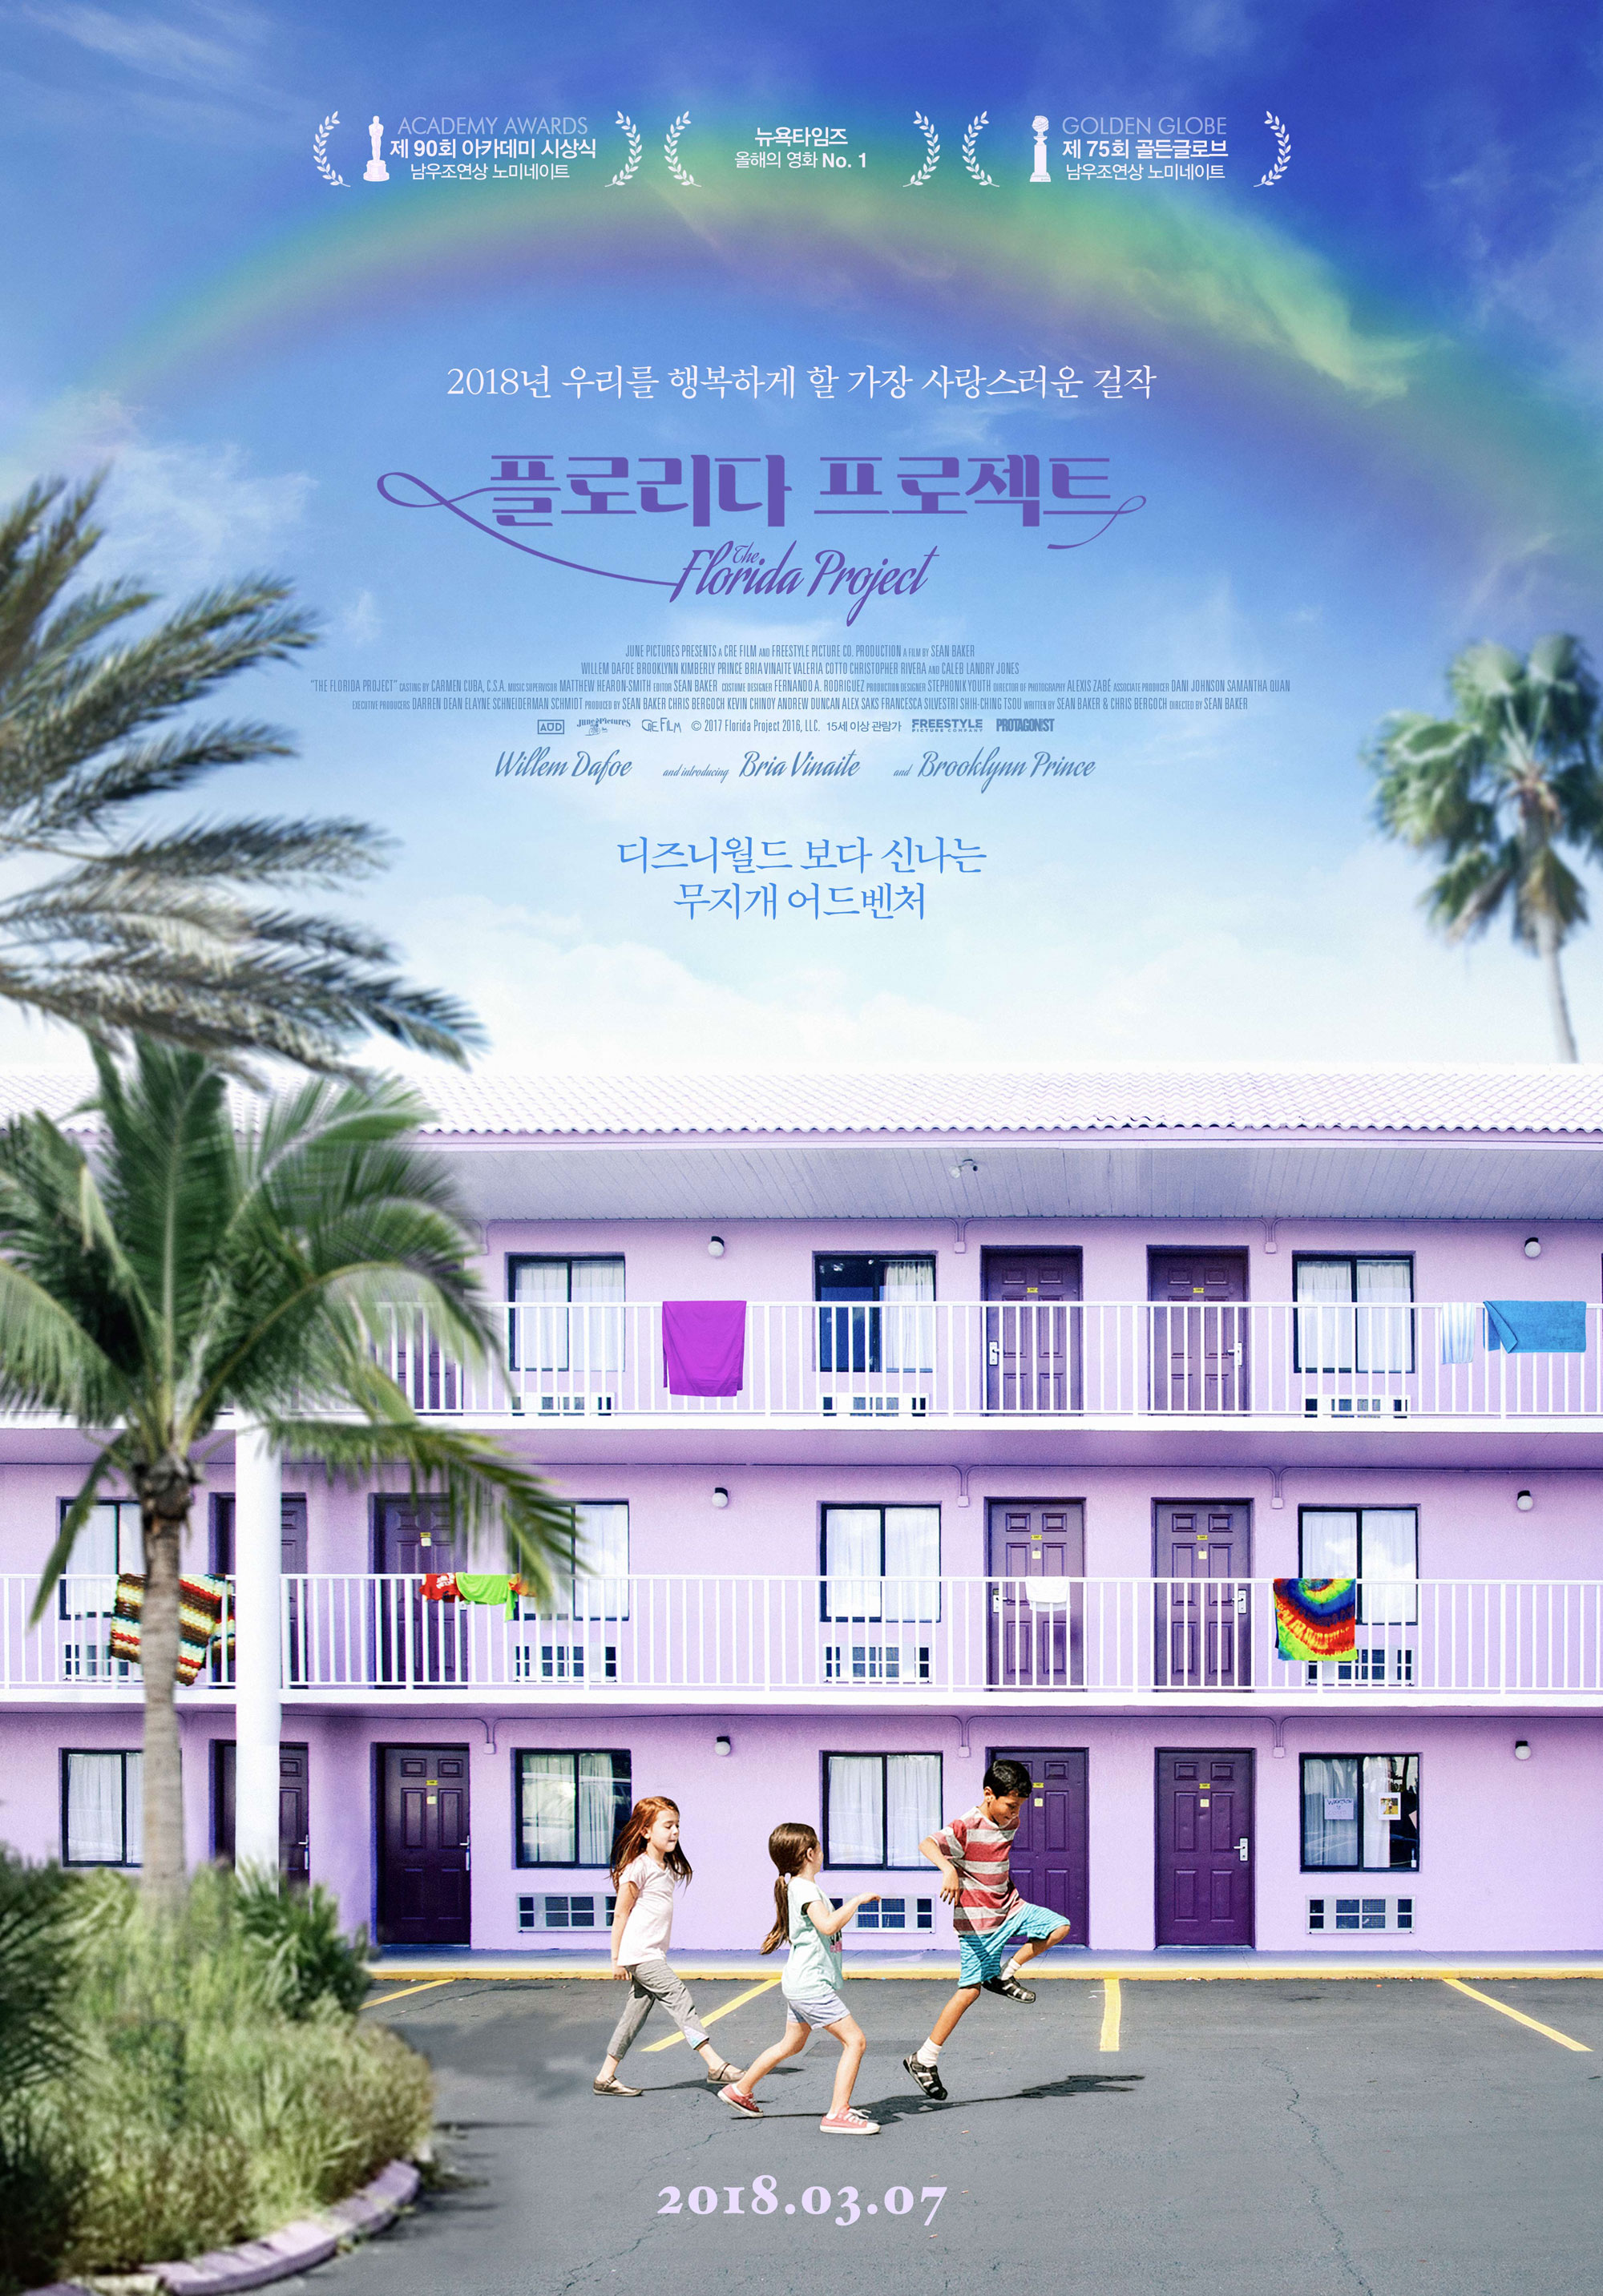 영화 플로리다 프로젝트 공식 포스터